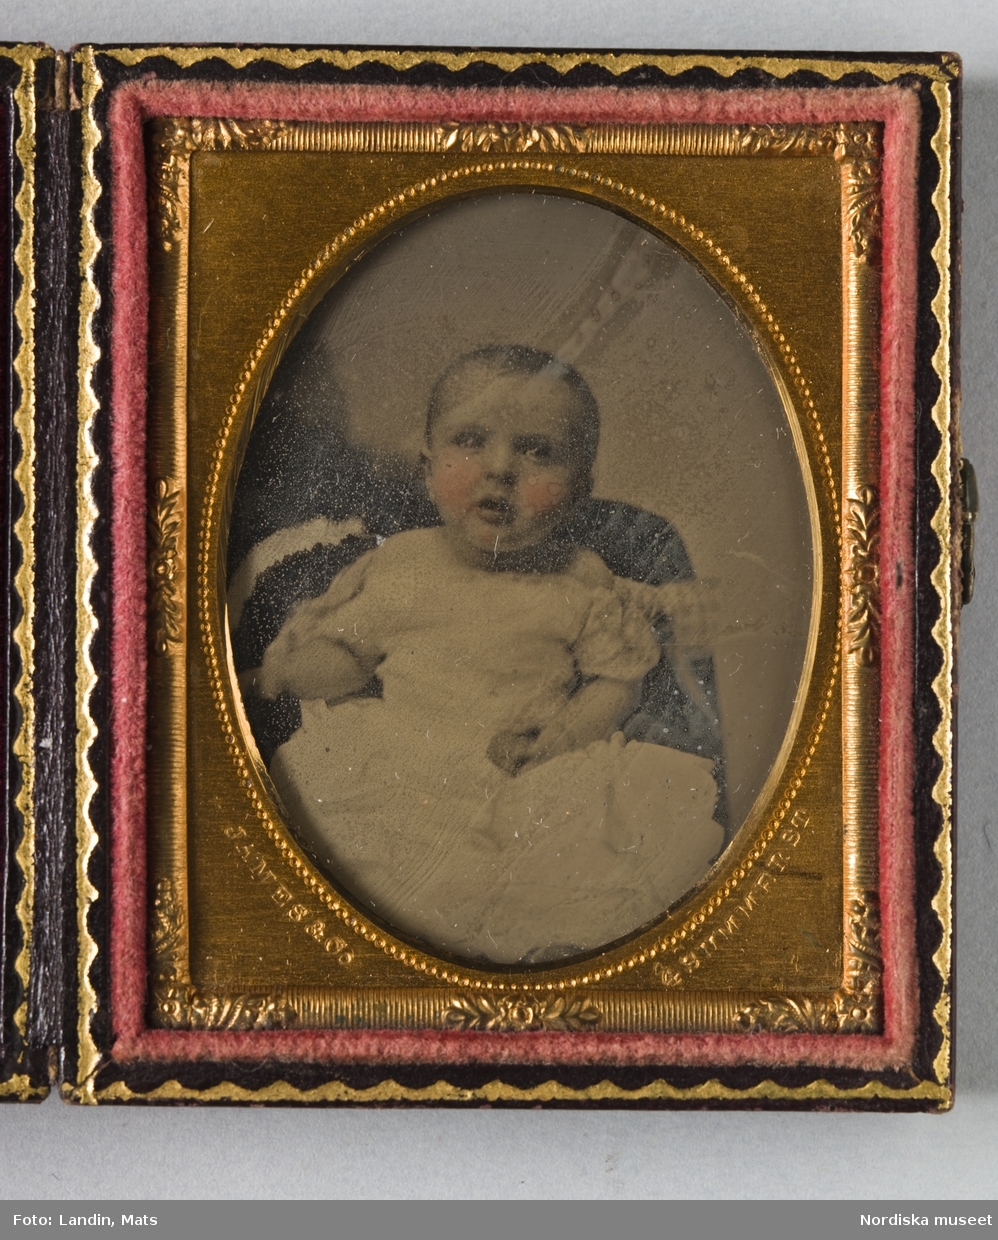 Porträtt av ett litet barn i vit klänning.Kolorerad Ambrotypi i förgylld metallram inpassad i fodral med sammetsfoder. Instansat i passepartouten: "James & Co, Summer St, 1860."
Nordiska museet inv.nr 279402